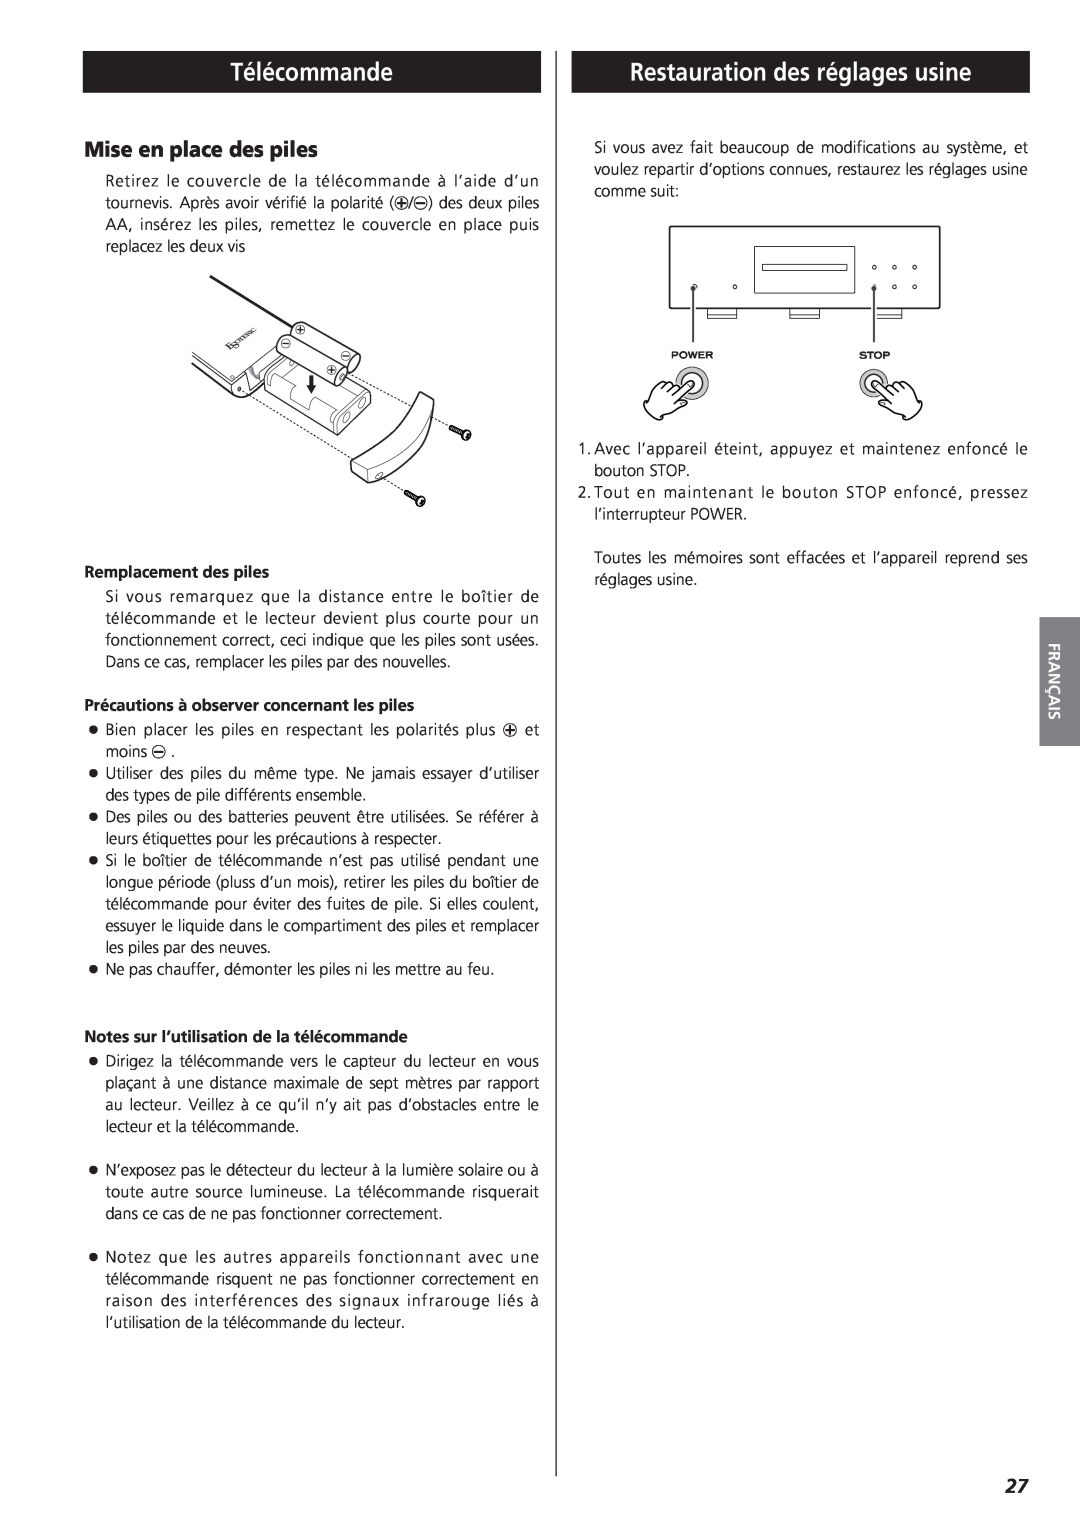 Teac X-01 owner manual Télécommande, Restauration des réglages usine, Mise en place des piles, Français 